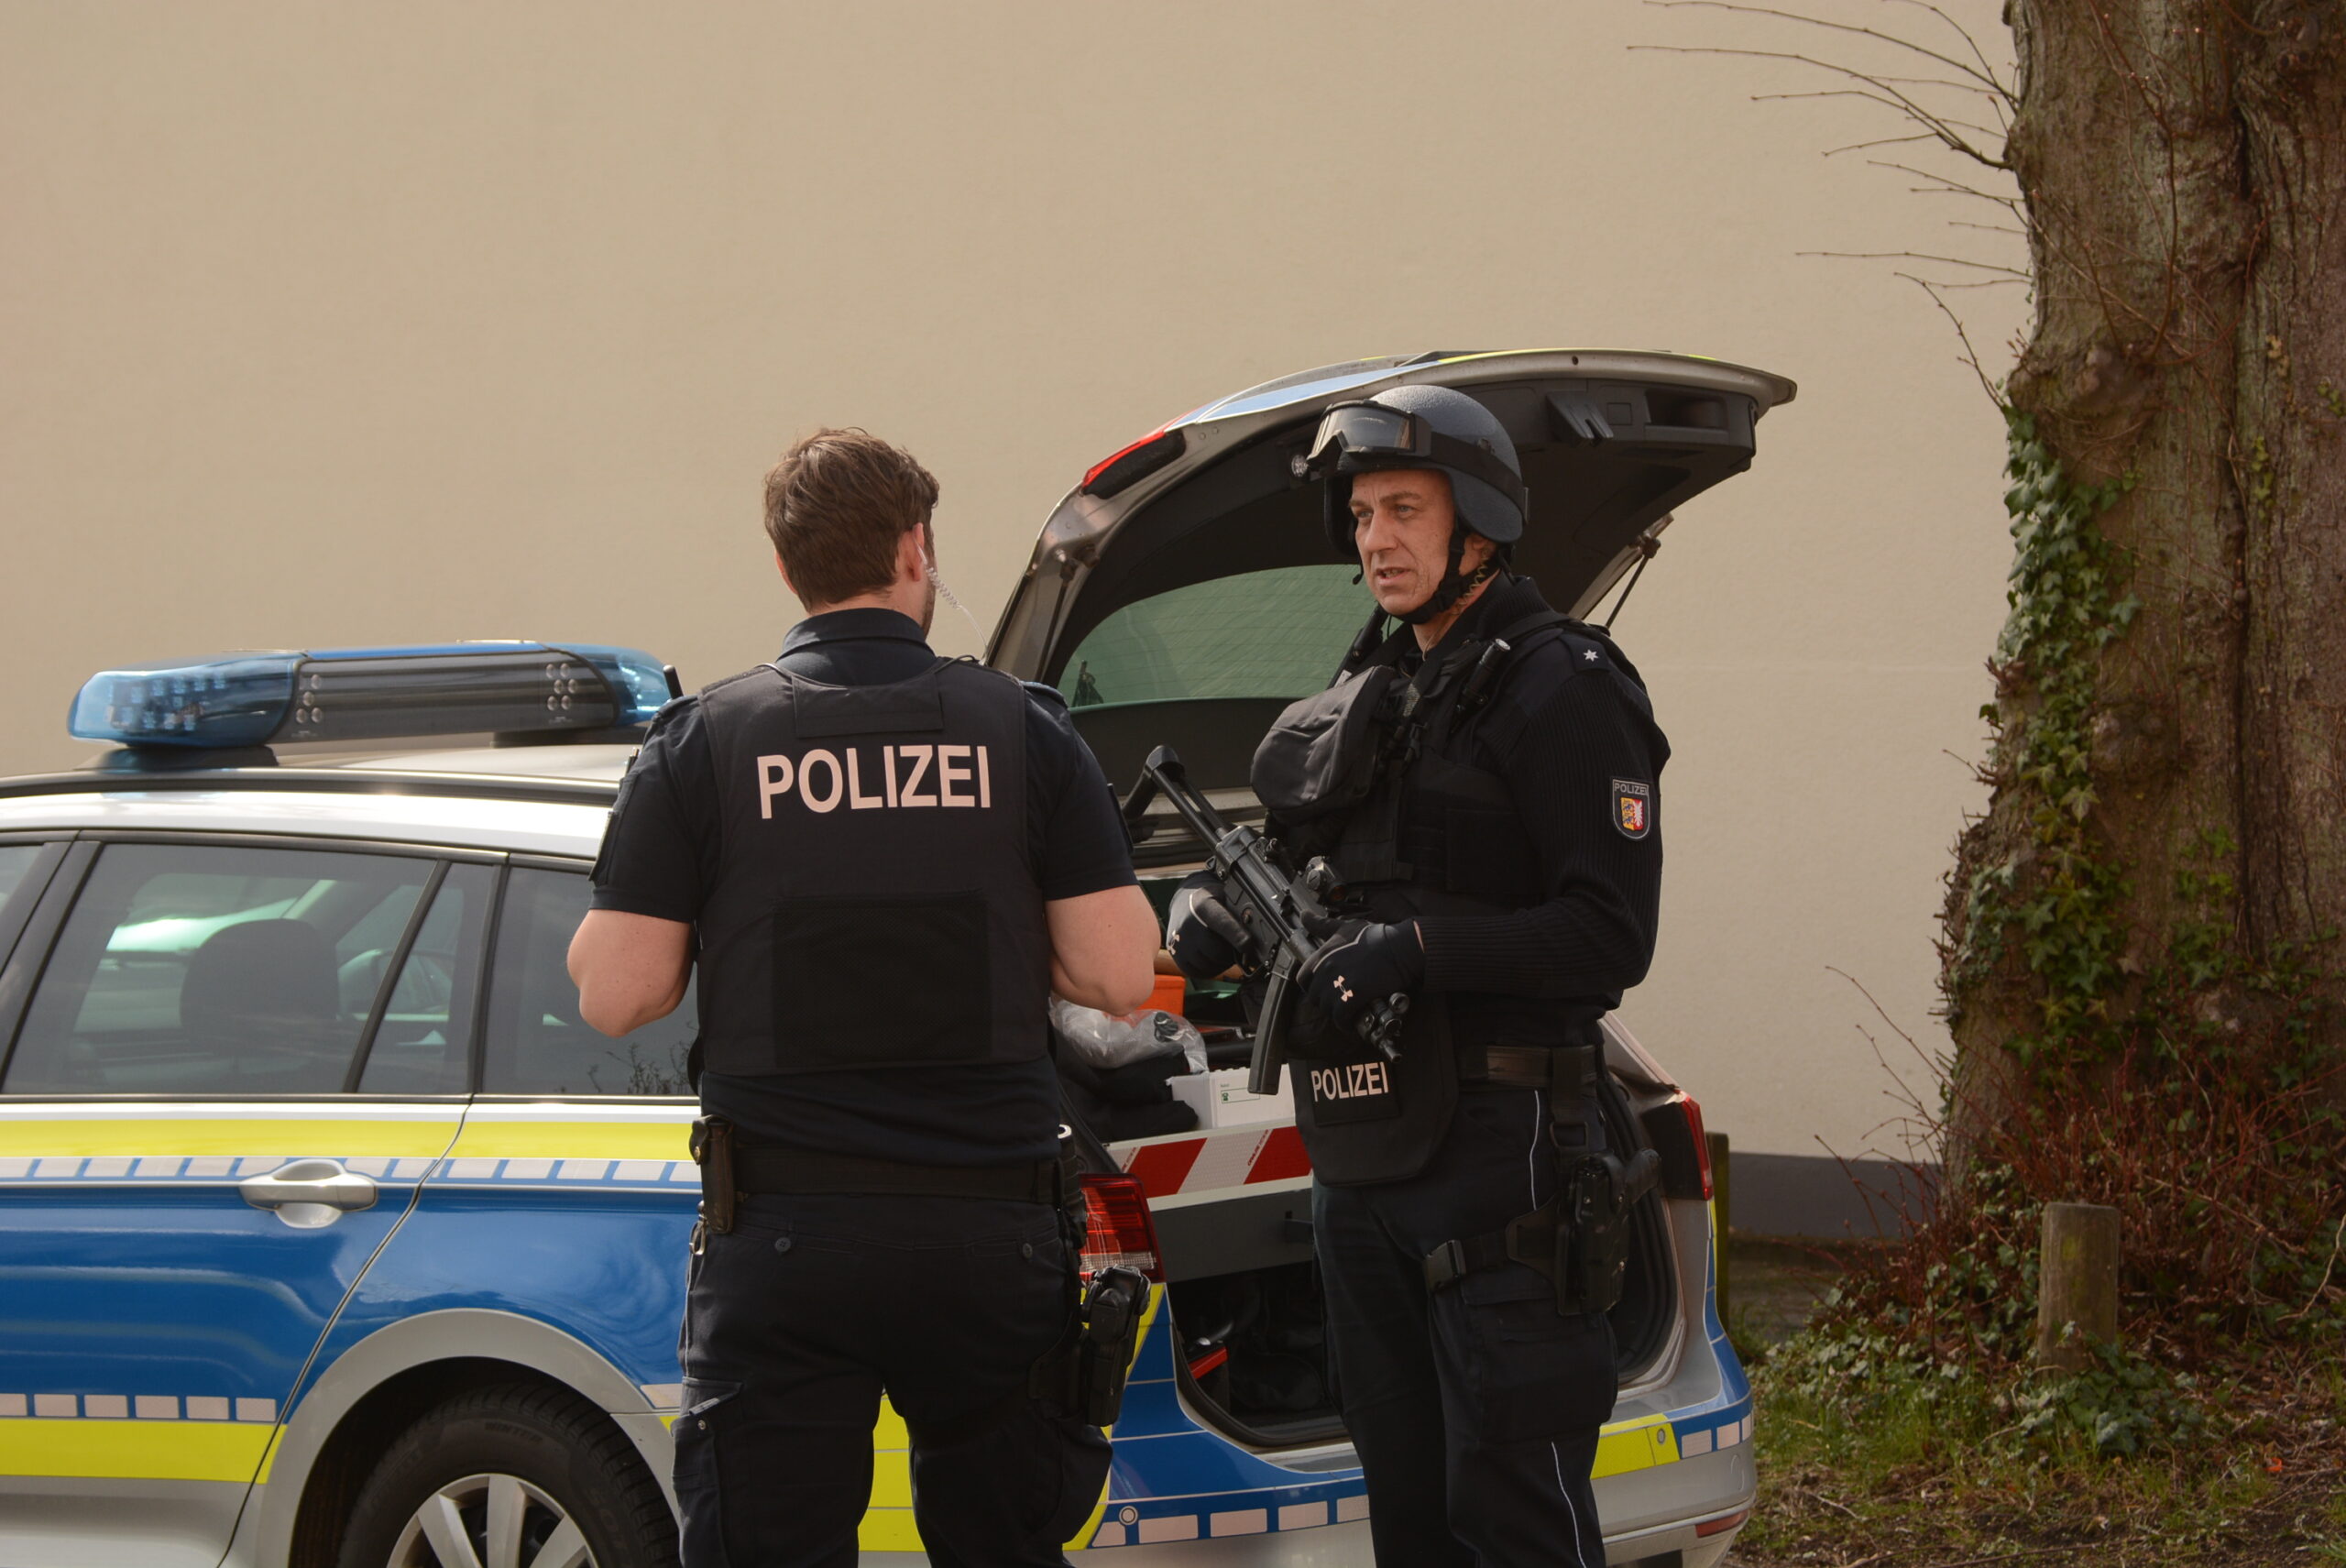 Großeinsatz in Bad Oldesloe – Polizisten mit Schutzausrüstung und Maschinenpistolen stürmten die Wohnung des Verdächtigen.